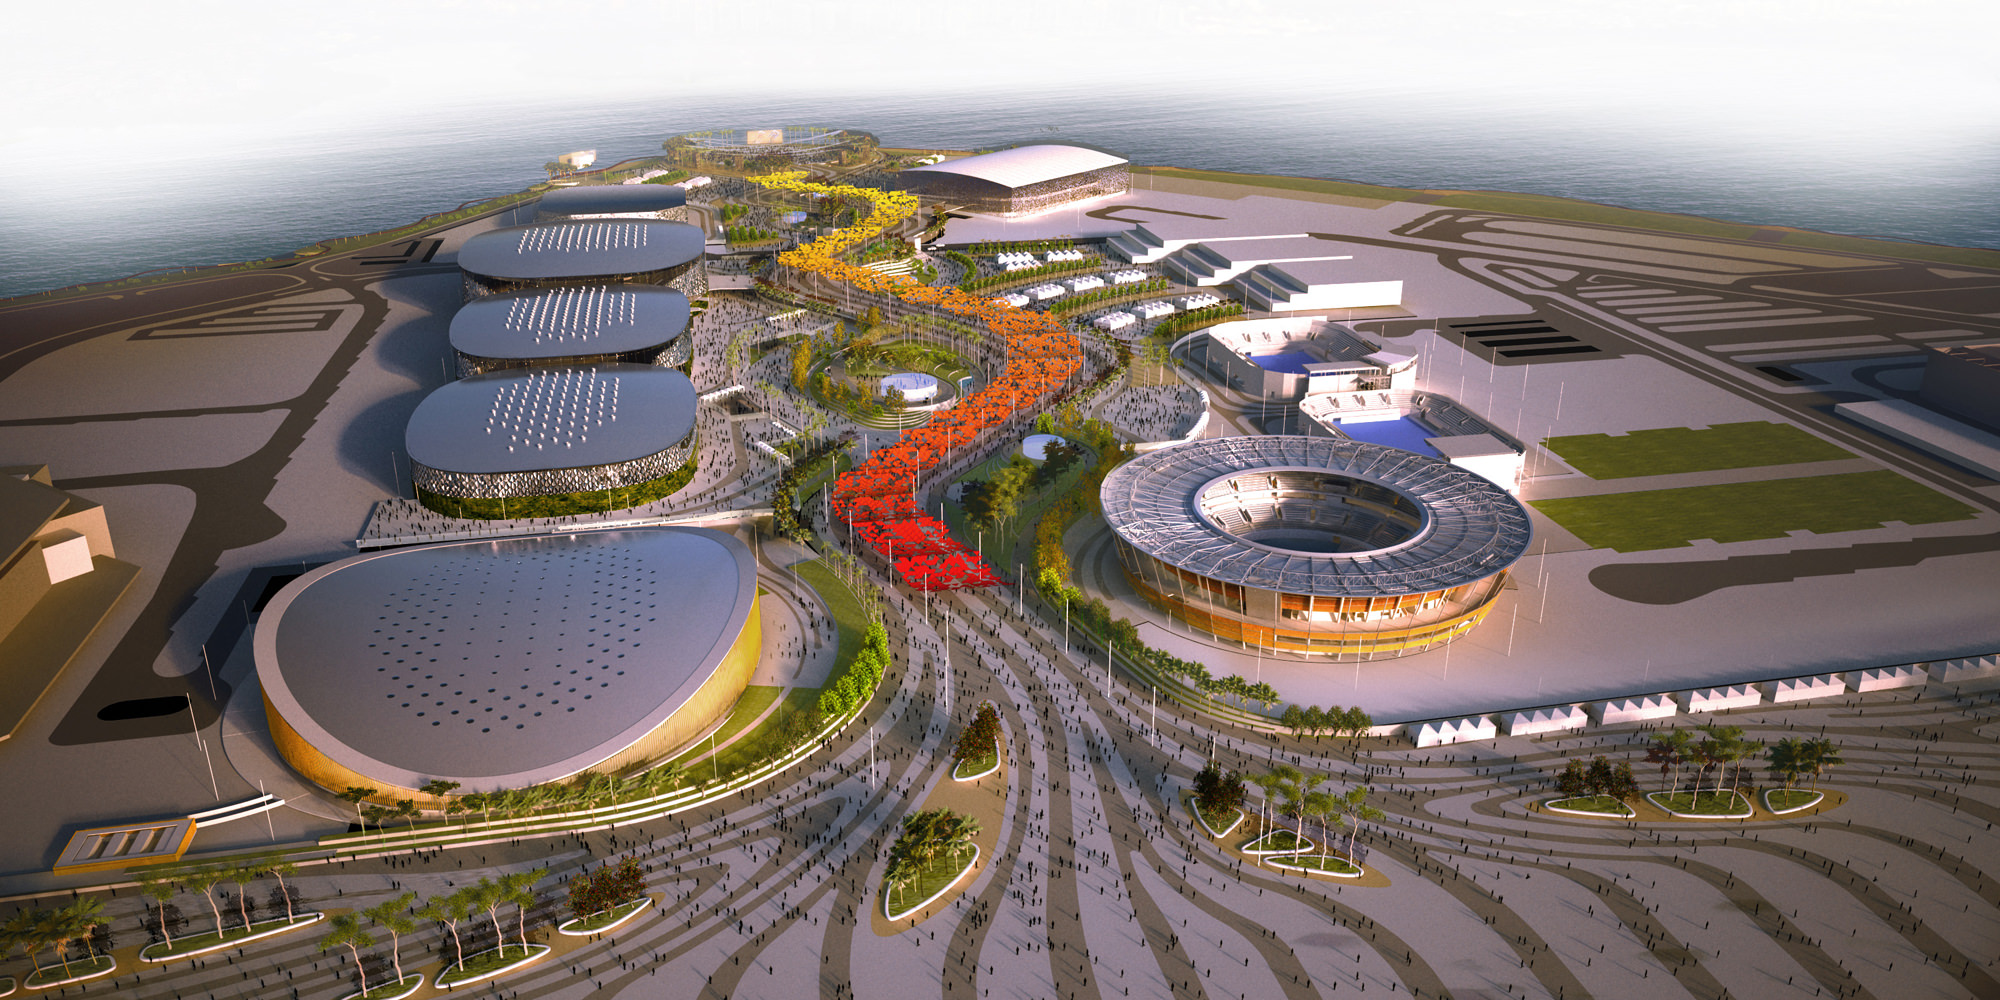 Vista de como será o Parque Olímpico - Foto: Reprodução/Internet